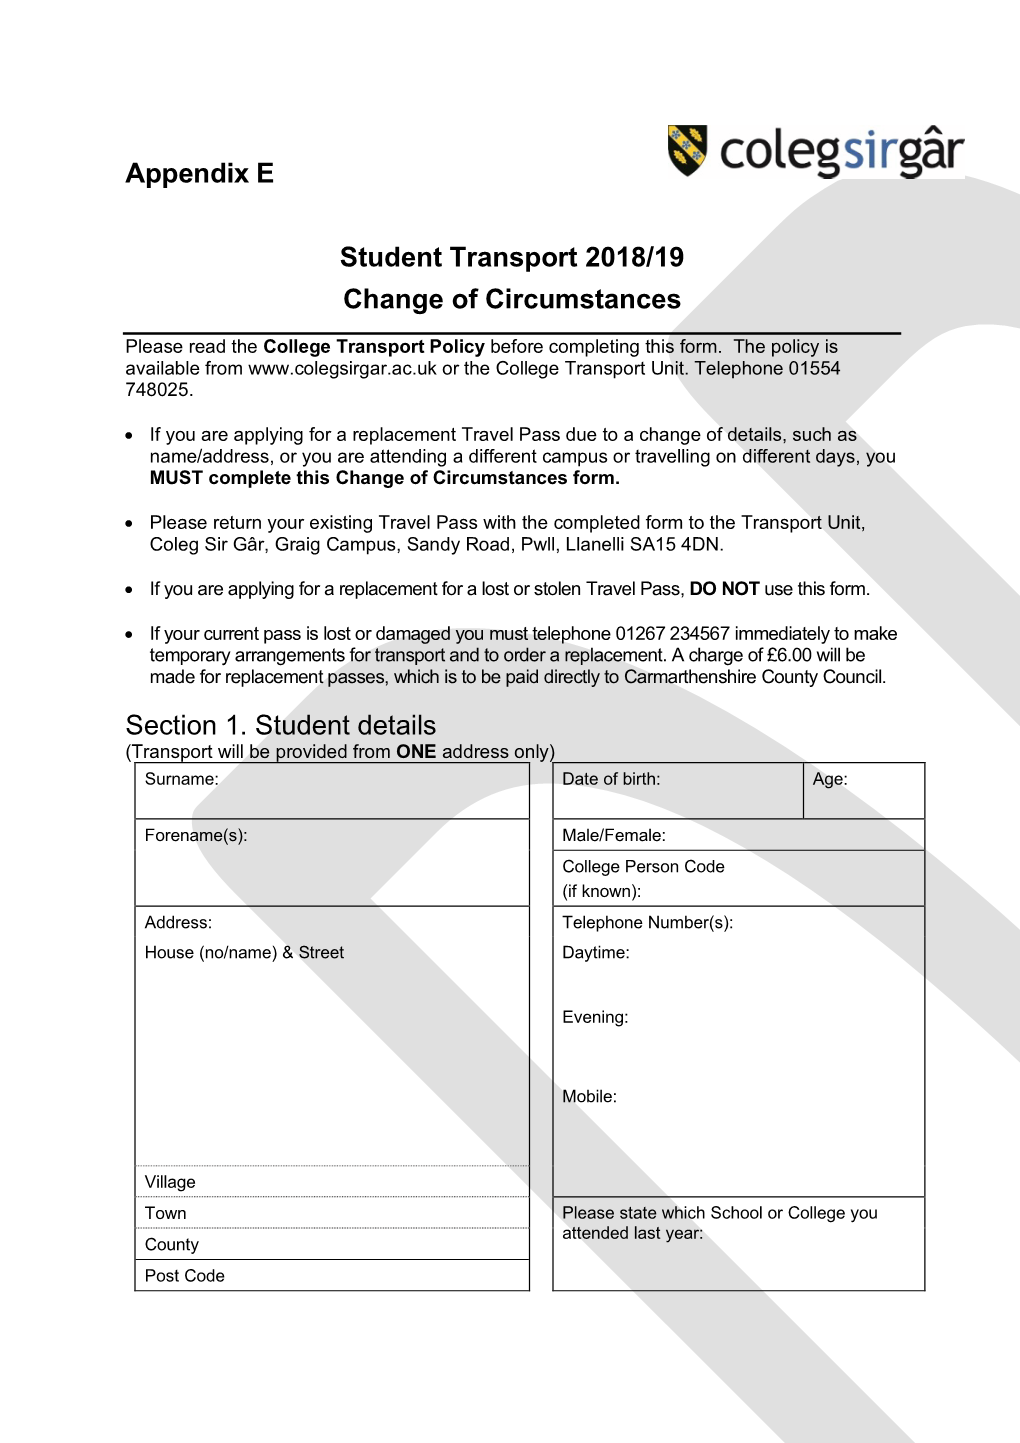 Appendix E Student Transport 2018/19 Change of Circumstances